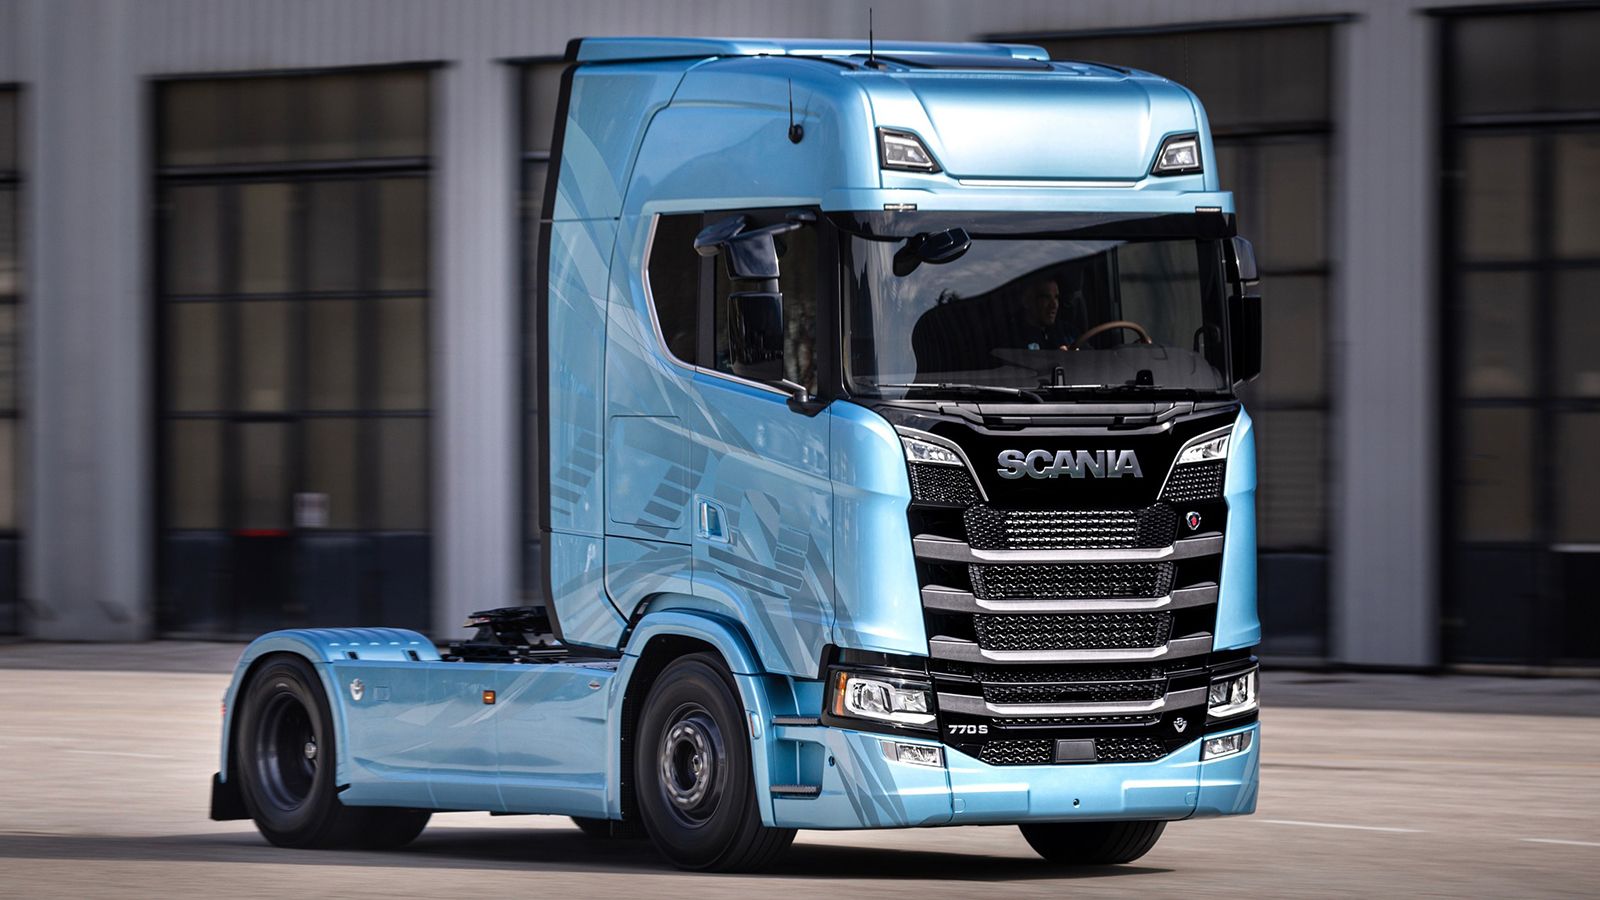 Νέες Limited Edition εκδόσεις των φορτηγών της Scania ετοιμάζει η Svempas.